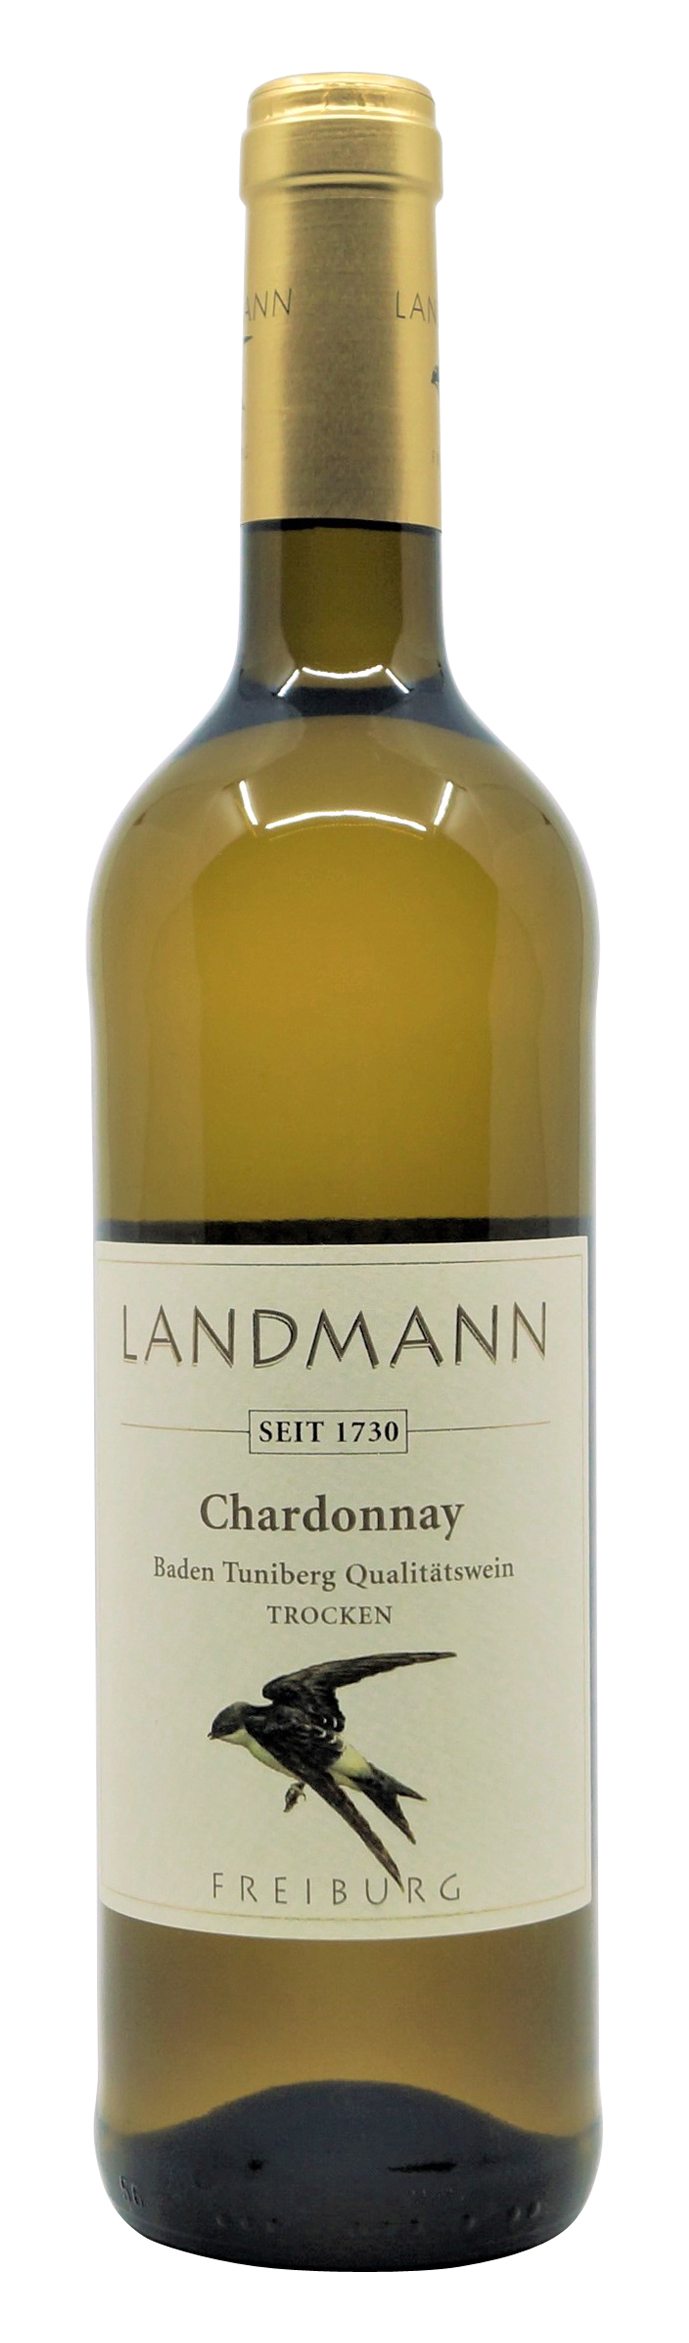 2019er Chardonnay trocken vom Weingut Landmann aus Waltershofen, 0,75 l Flasche (  16,27 €/ Liter)